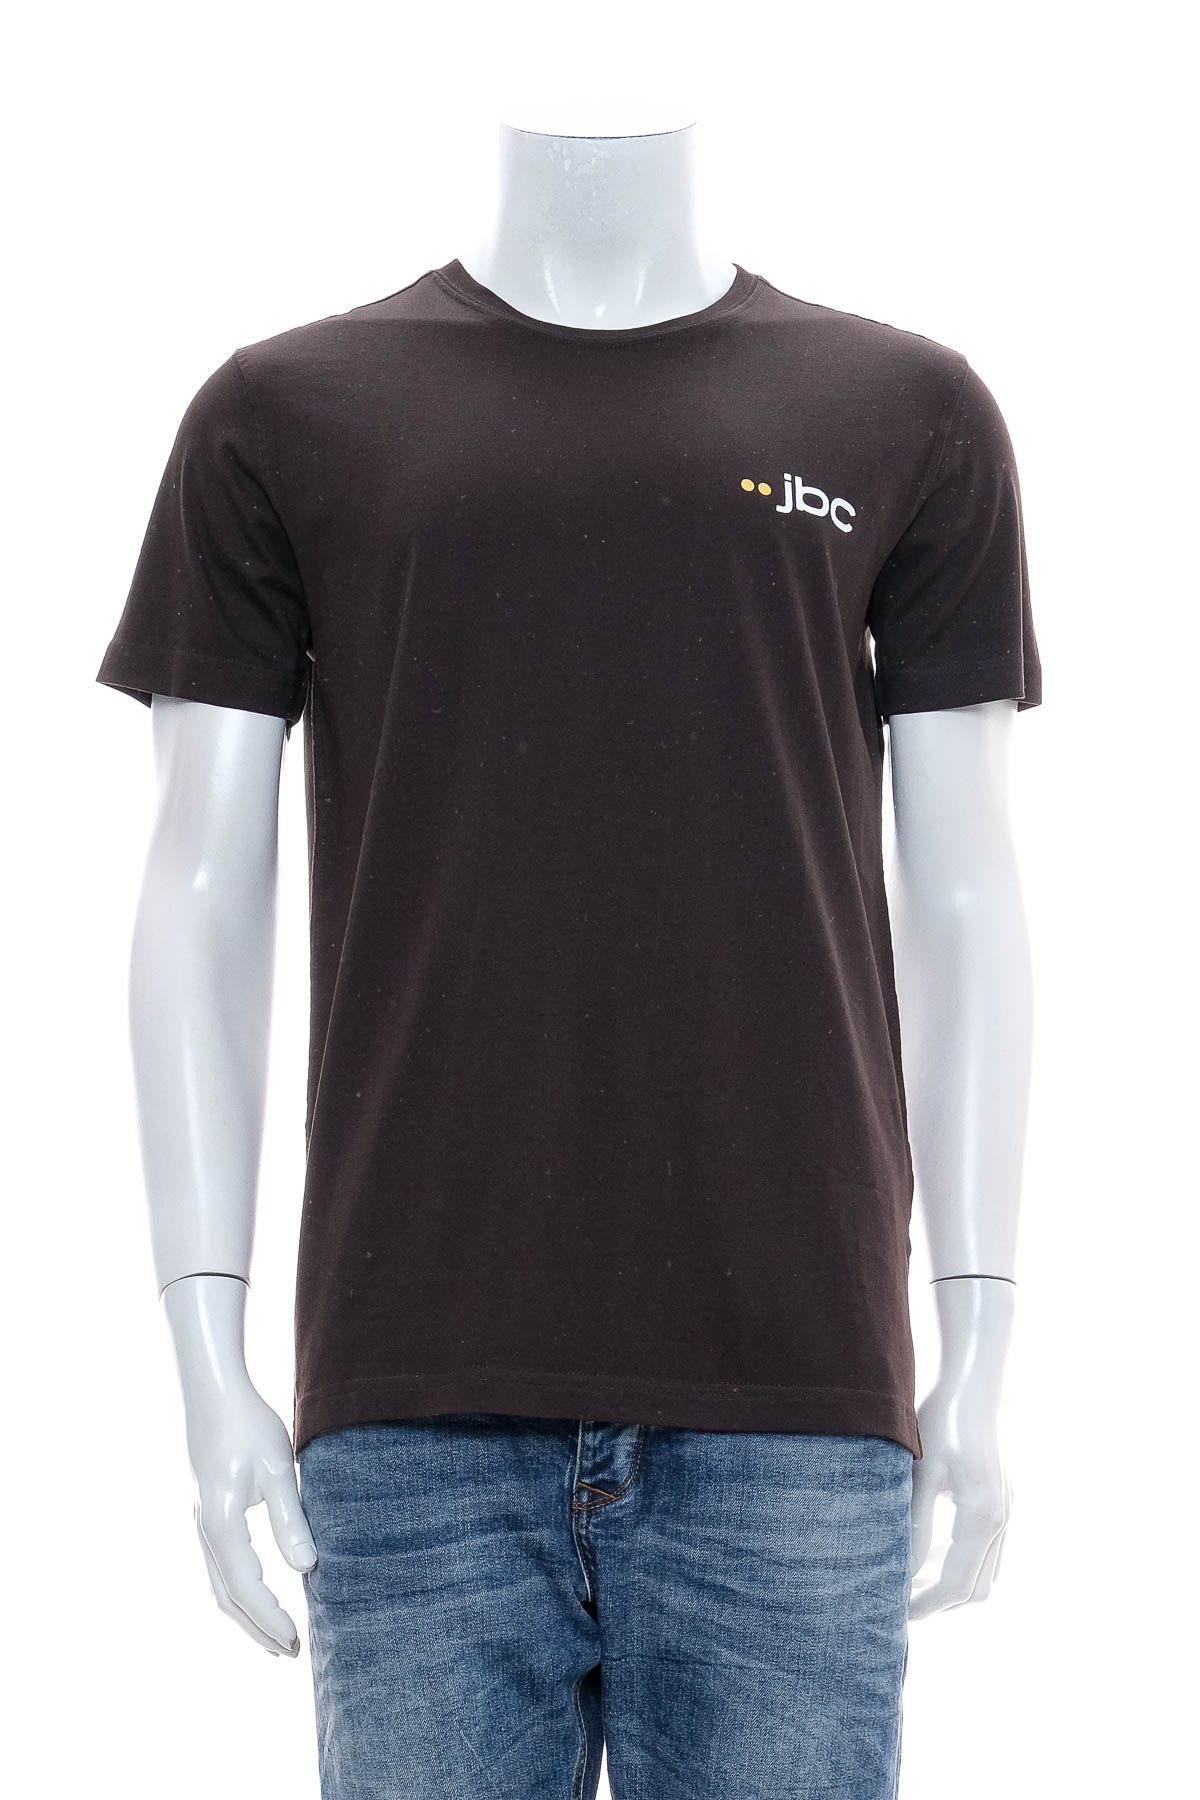 Ανδρικό μπλουζάκι - Jbc. - 0